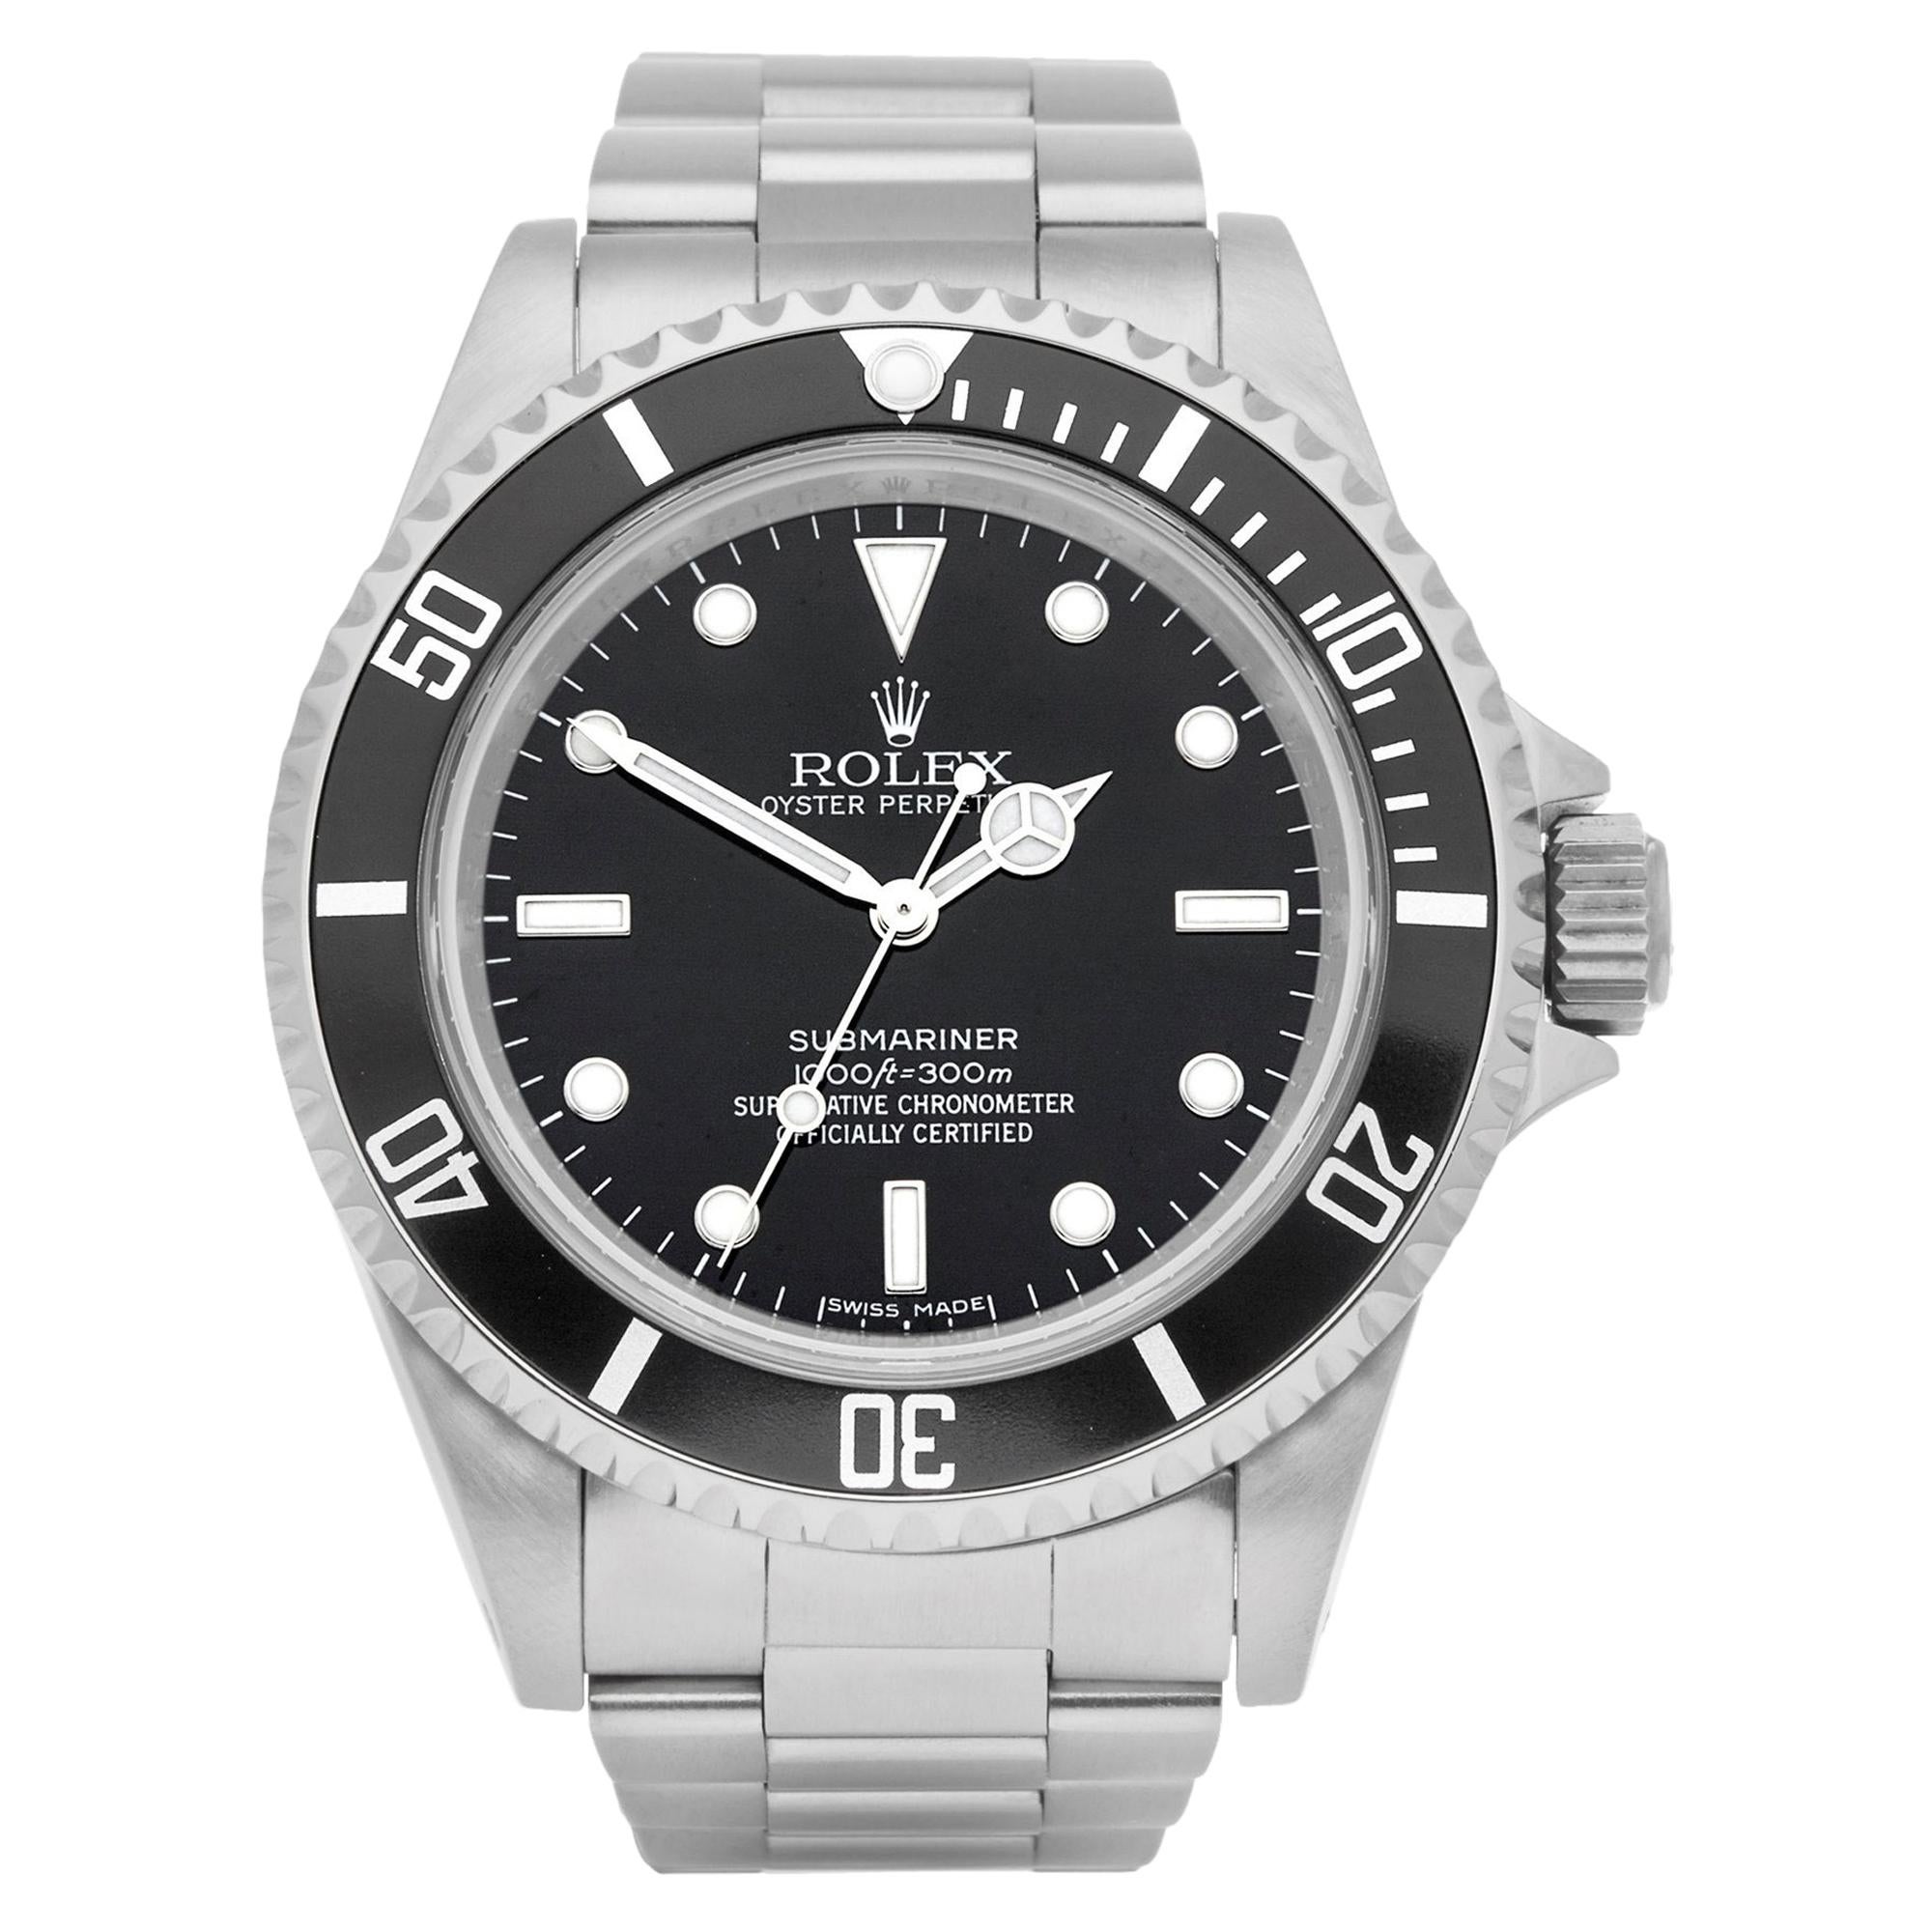 Rolex Submariner No Date 14060M Men Stainless Steel Watch